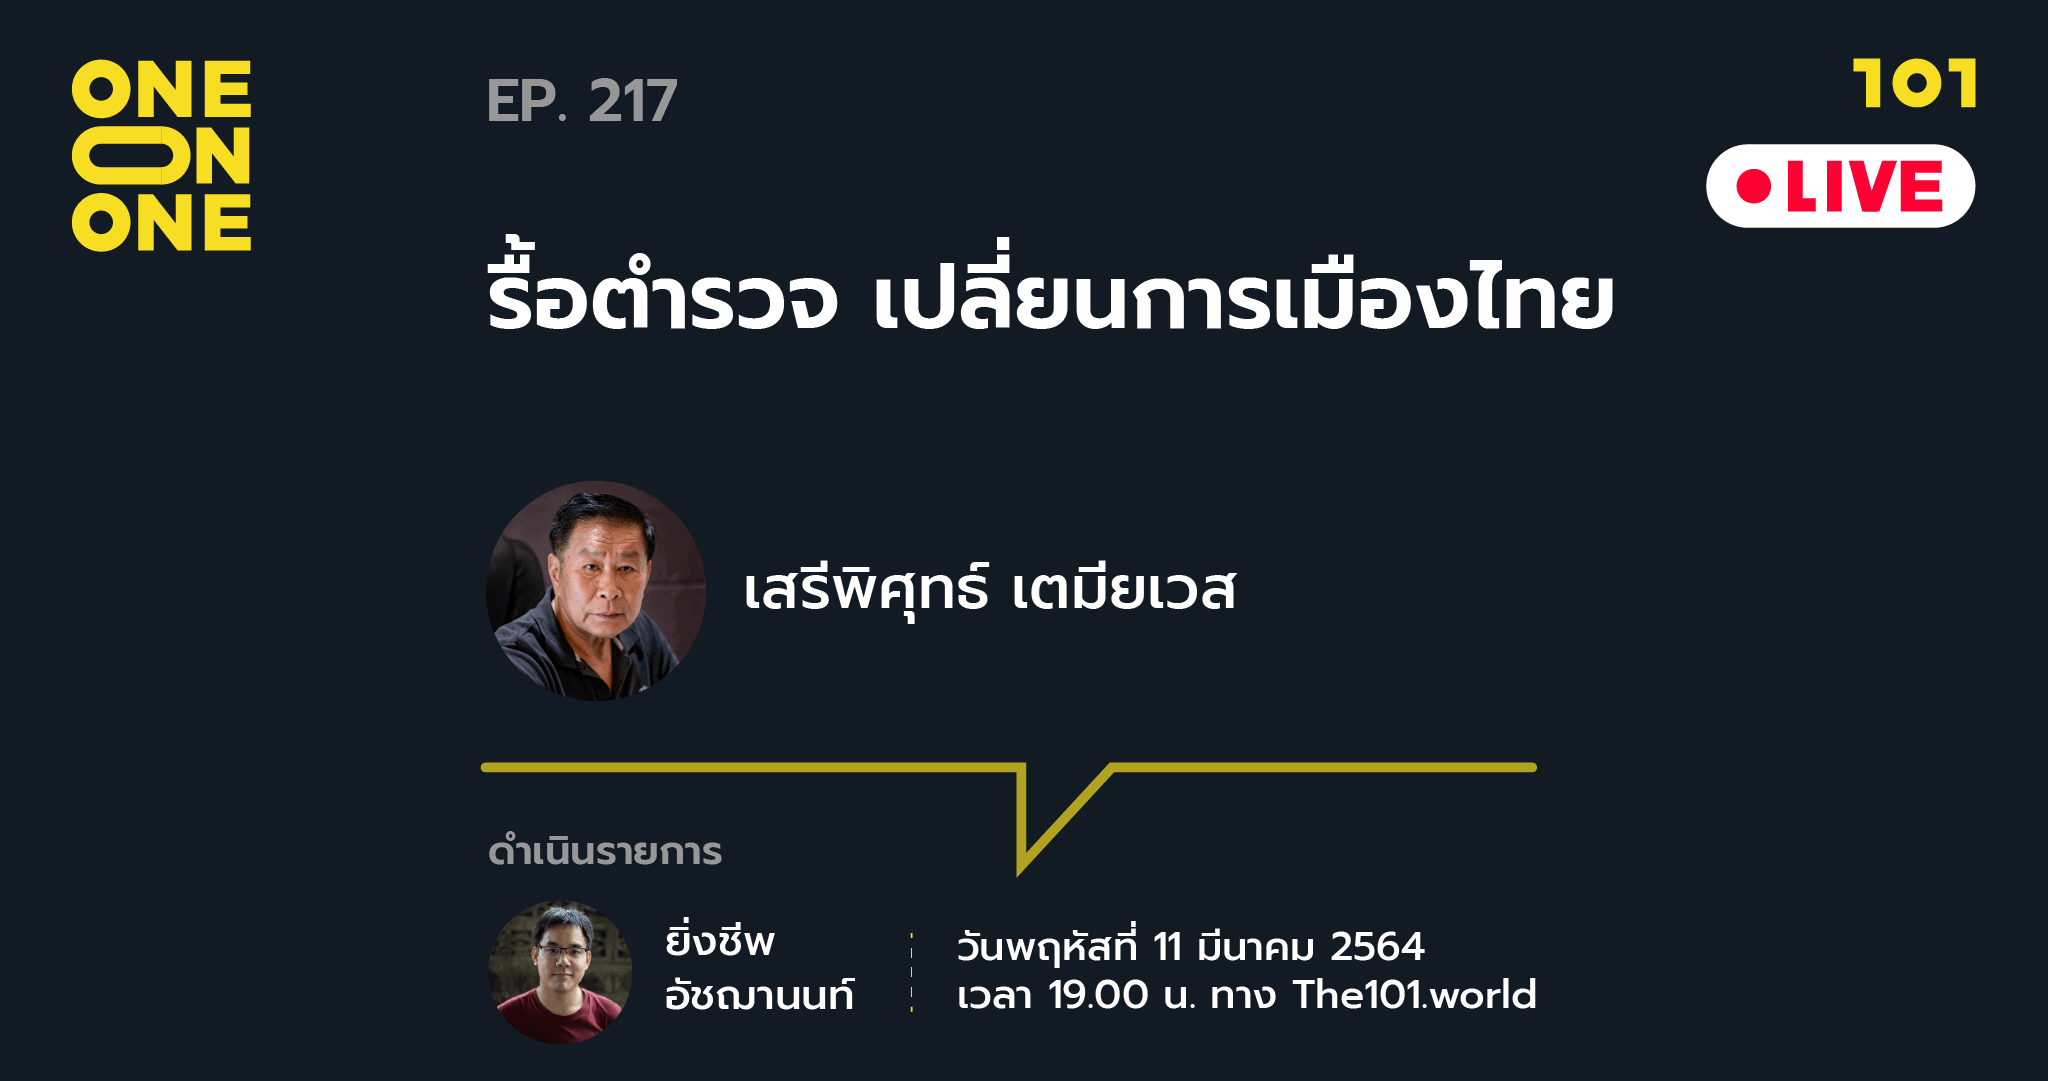 101 One-on-One EP.217 "รื้อตำรวจ เปลี่ยนการเมืองไทย" กับ เสรีพิศุทธ์ เตมียเวส